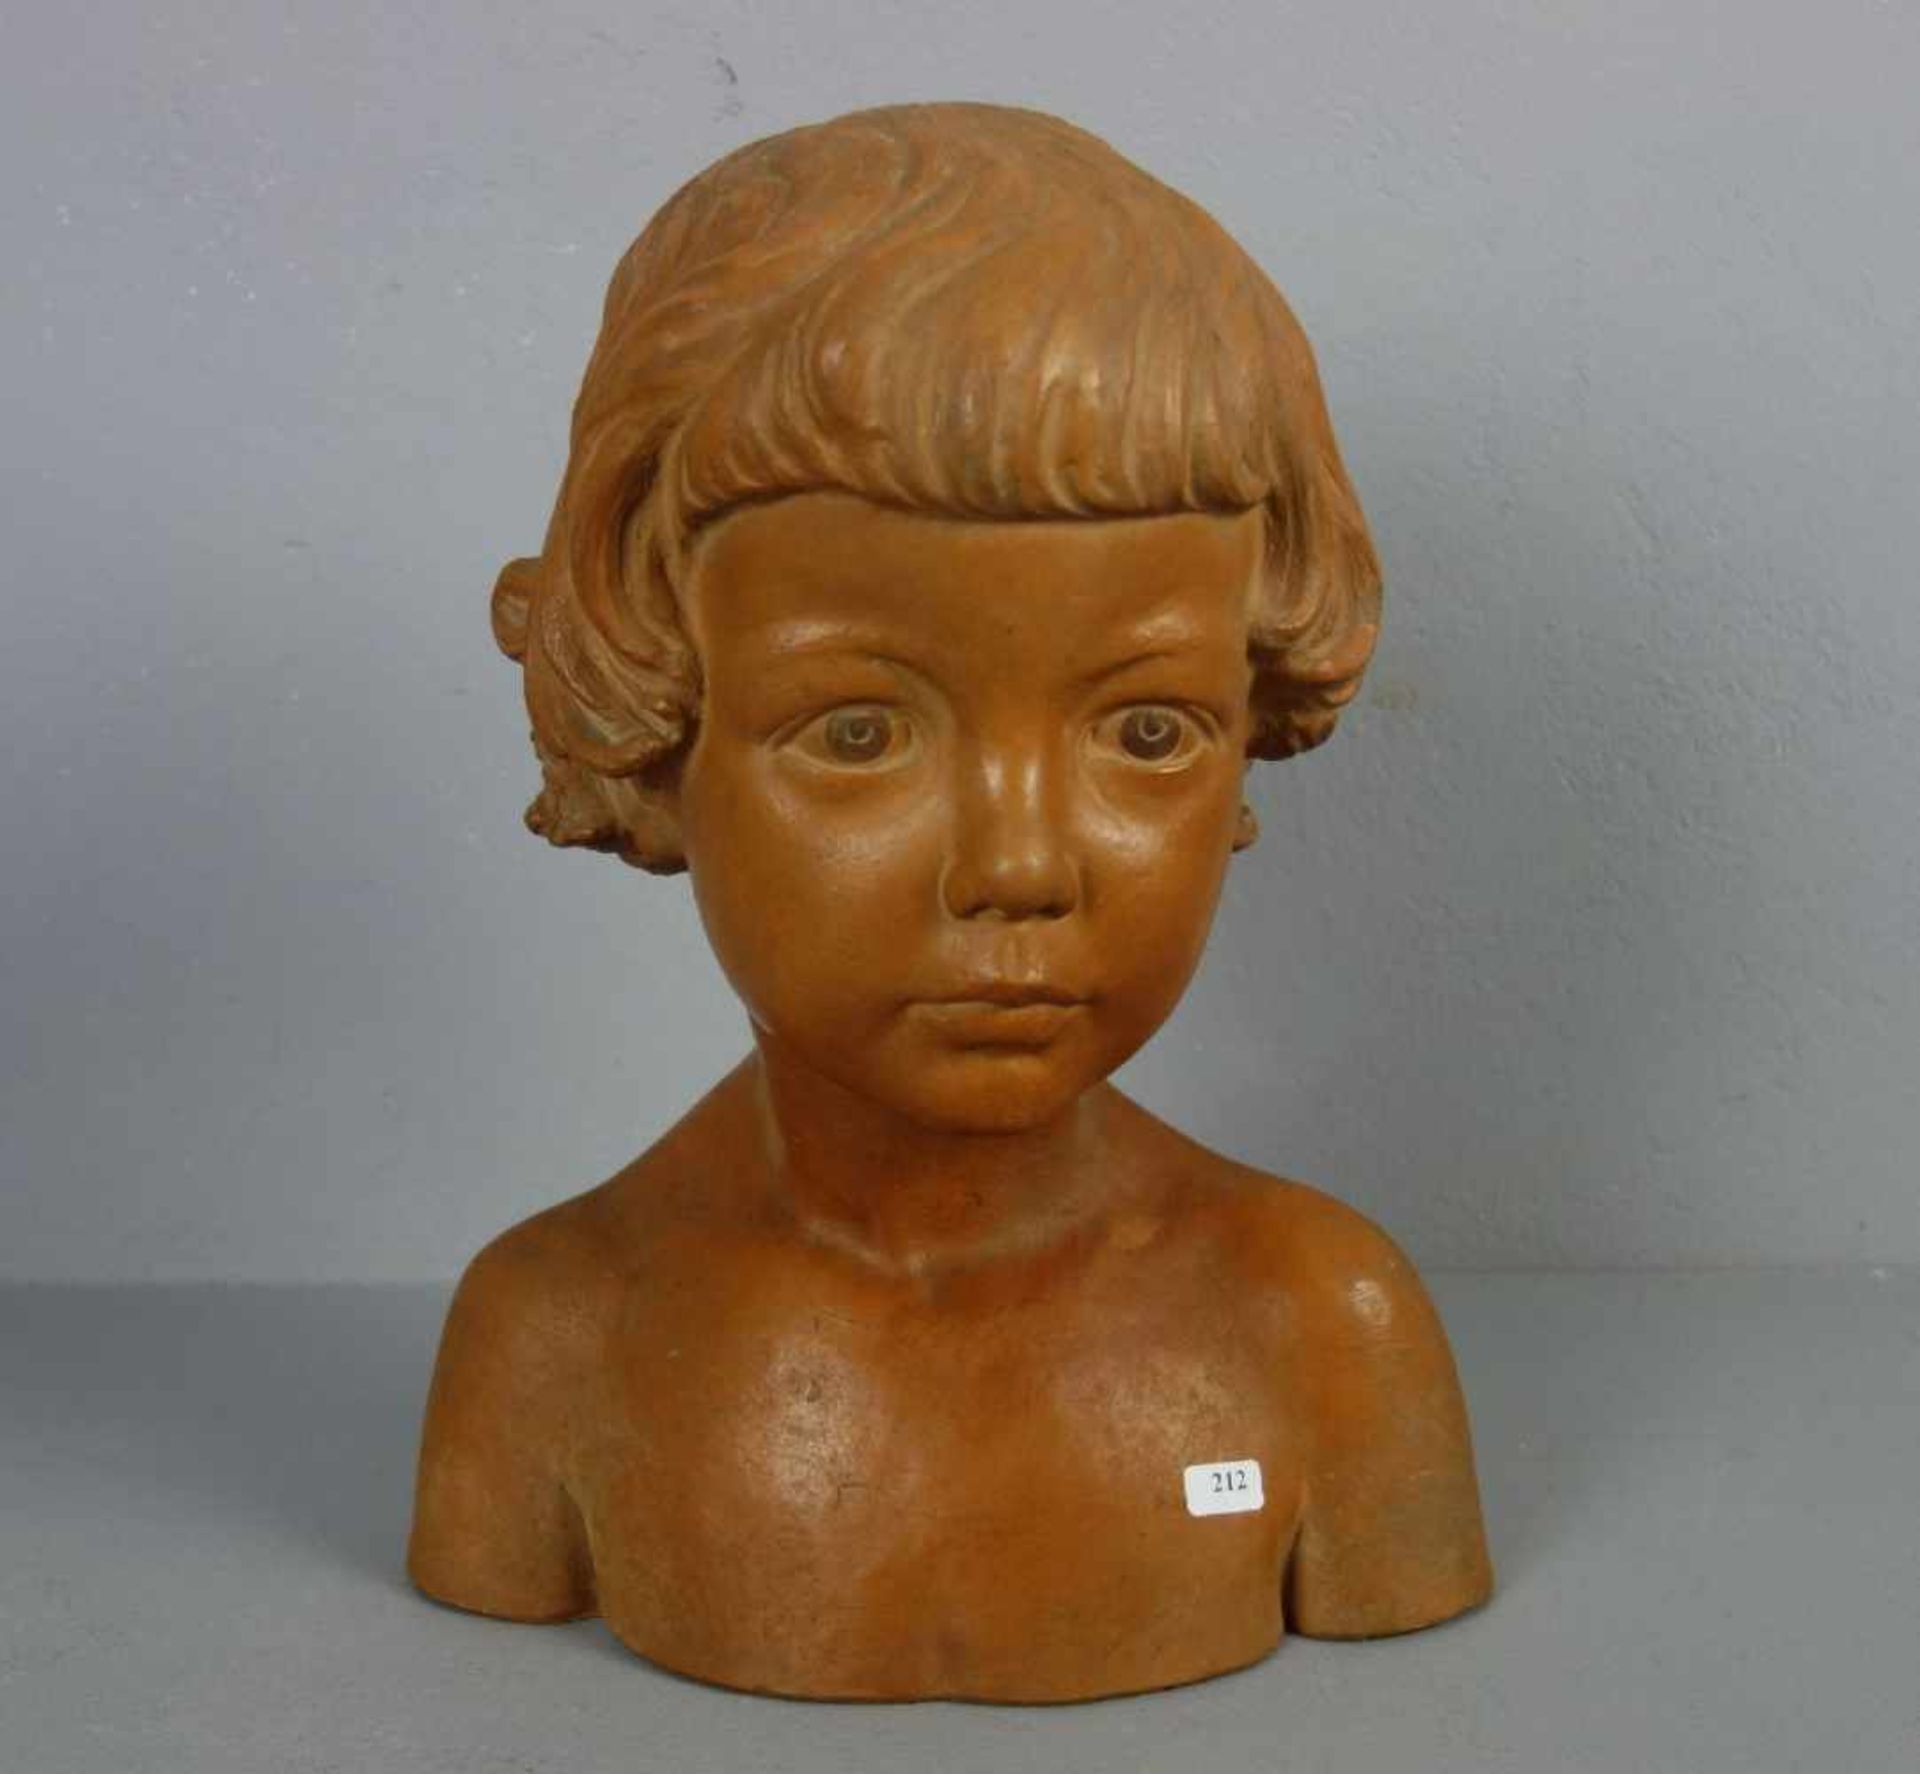 KOLLMAR, WILHELM (1872-1948), Skulptur: "Büste eines Mädchens", Terrakotta, revers vertieft signiert